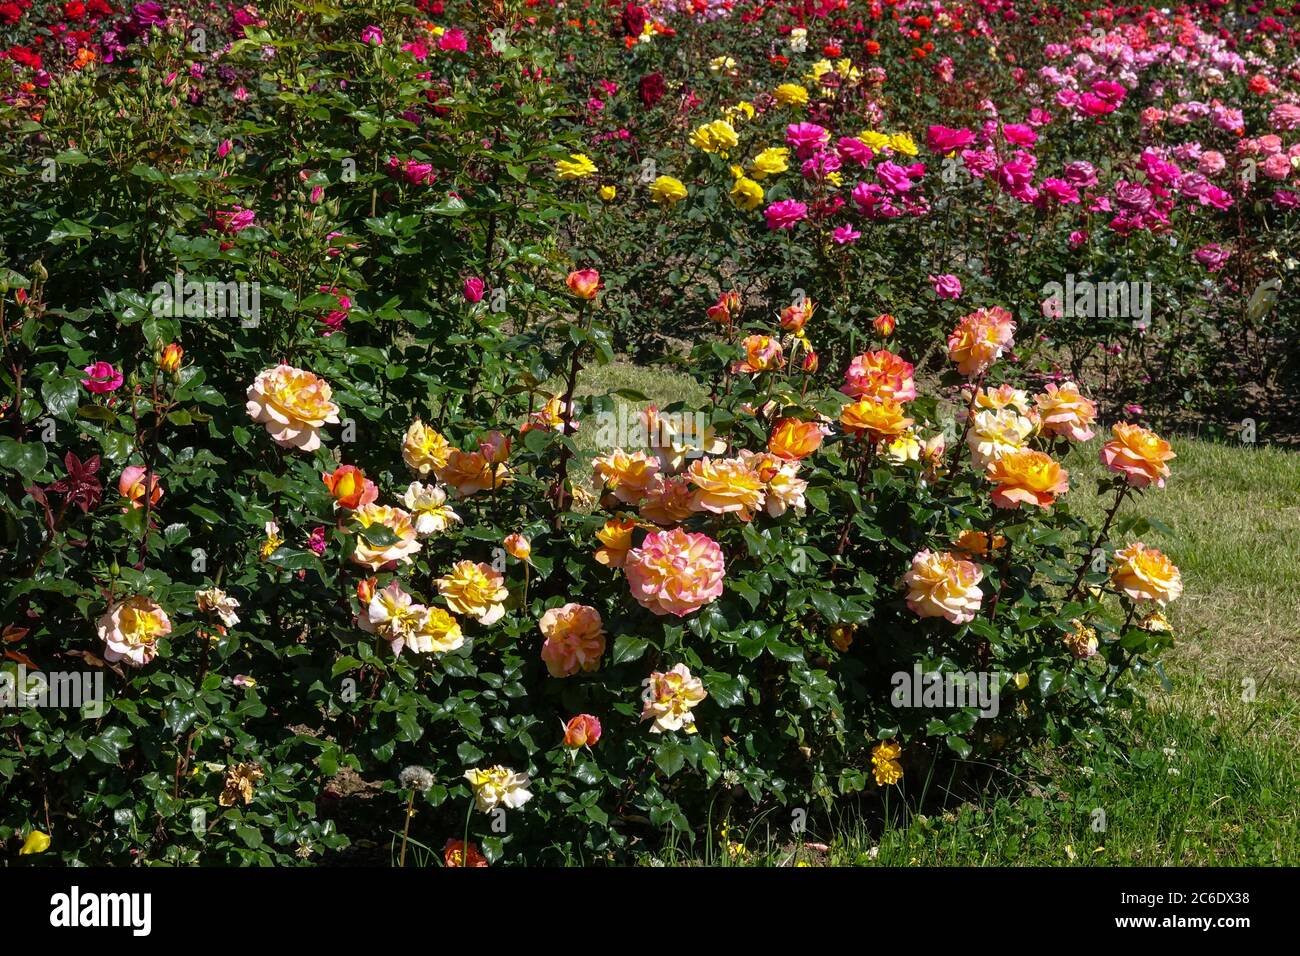 Colorful roses in garden, hybrid tea roses in garden flower bed Stock Photo